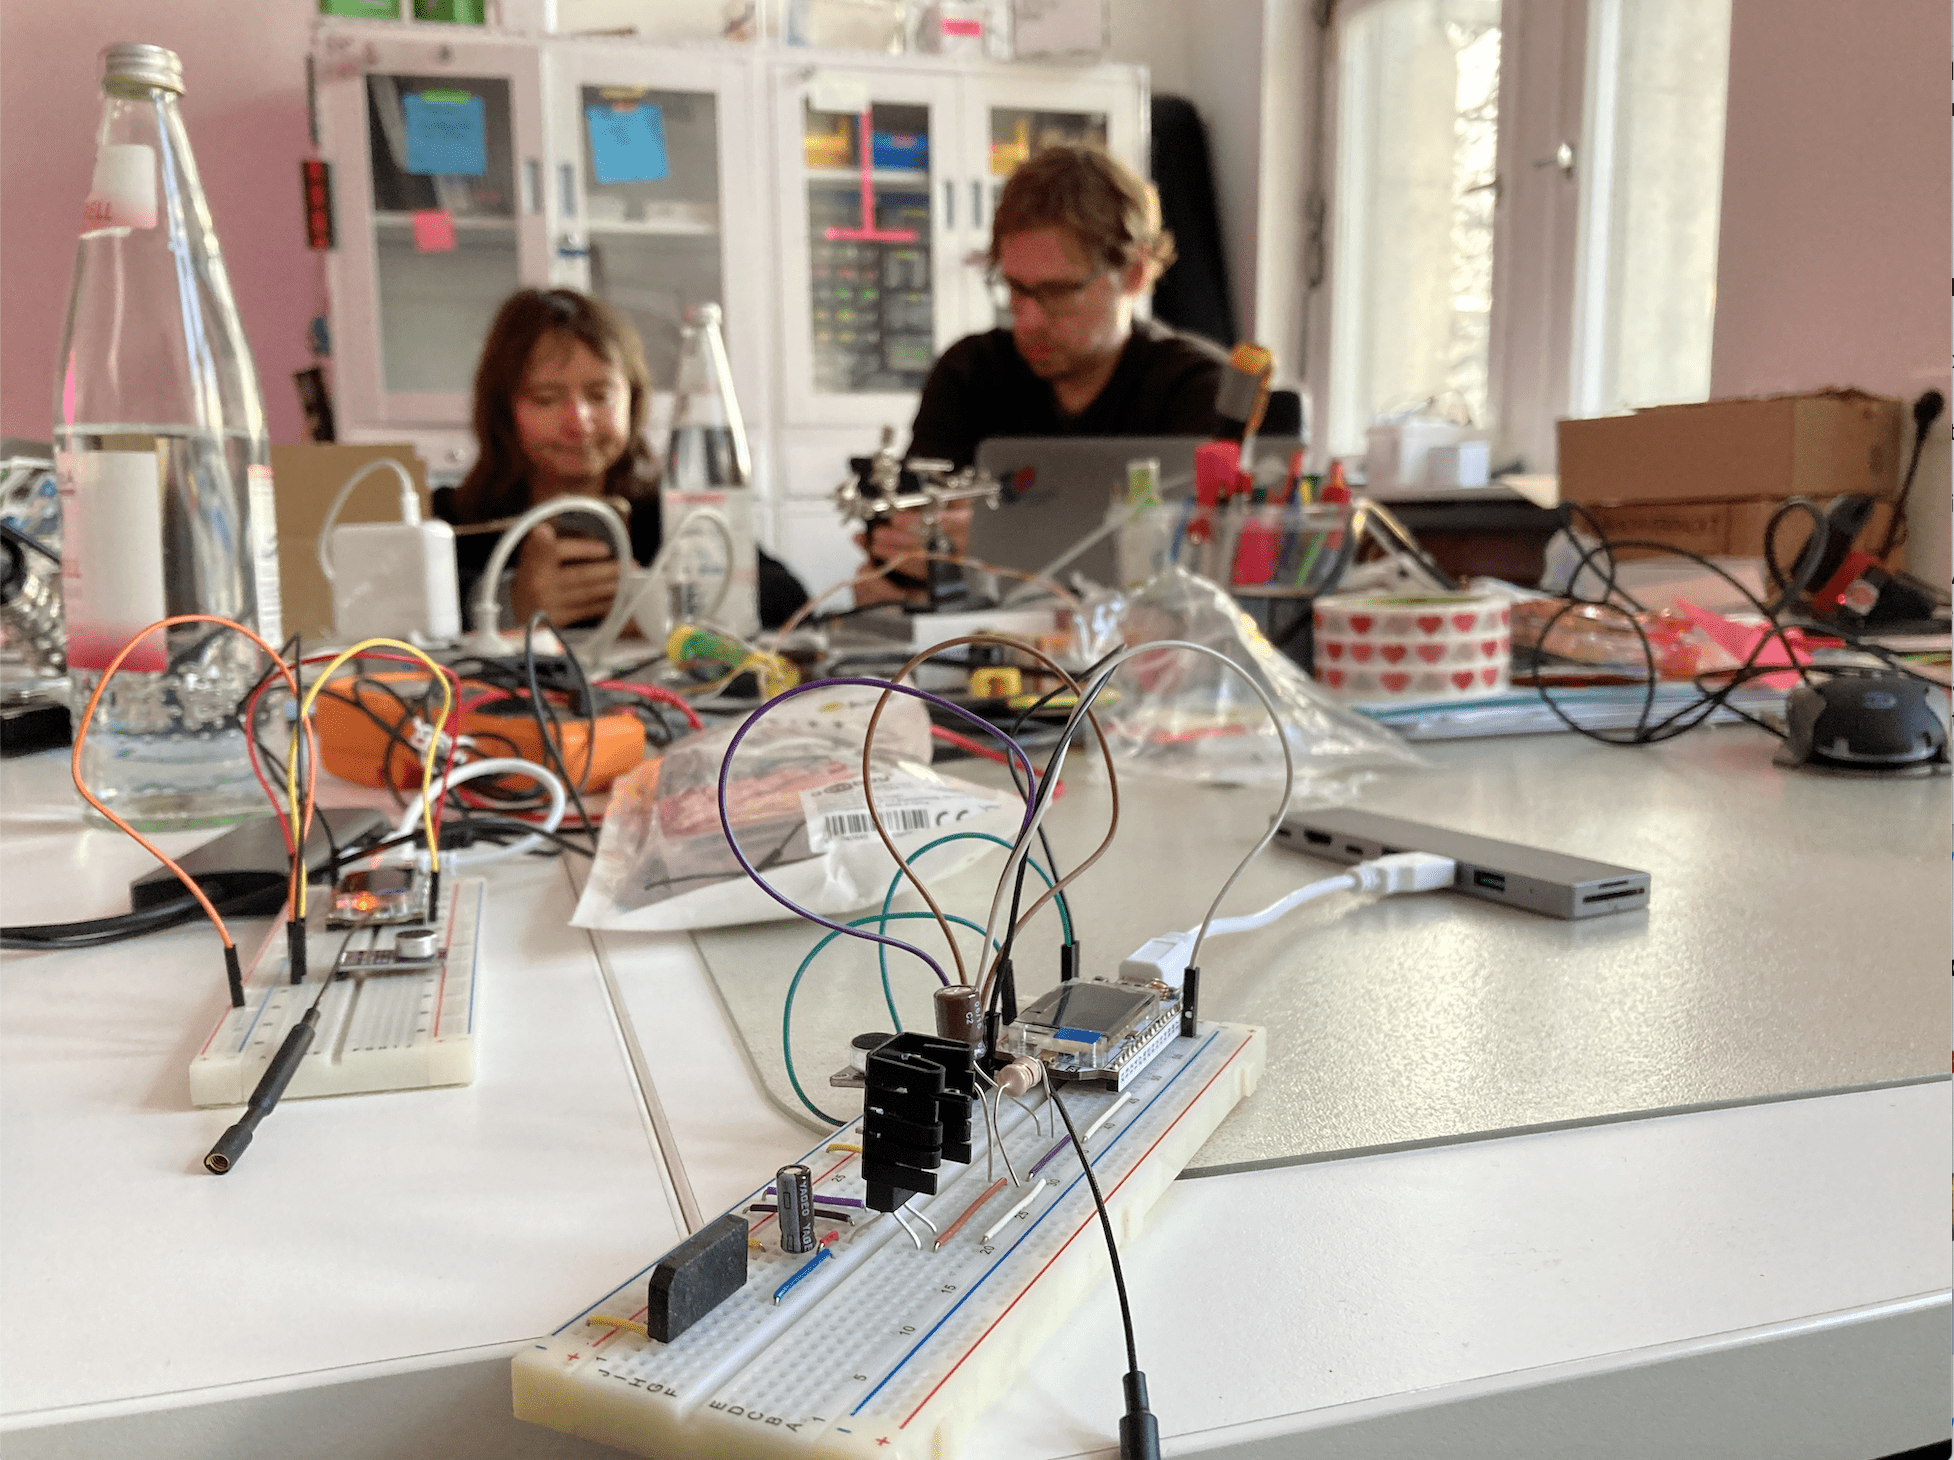 Verschiedene Boards, Kabel und Sensoren liegen auf einem Tisch, en dem zwei Personen im Hintergrund arbeiten